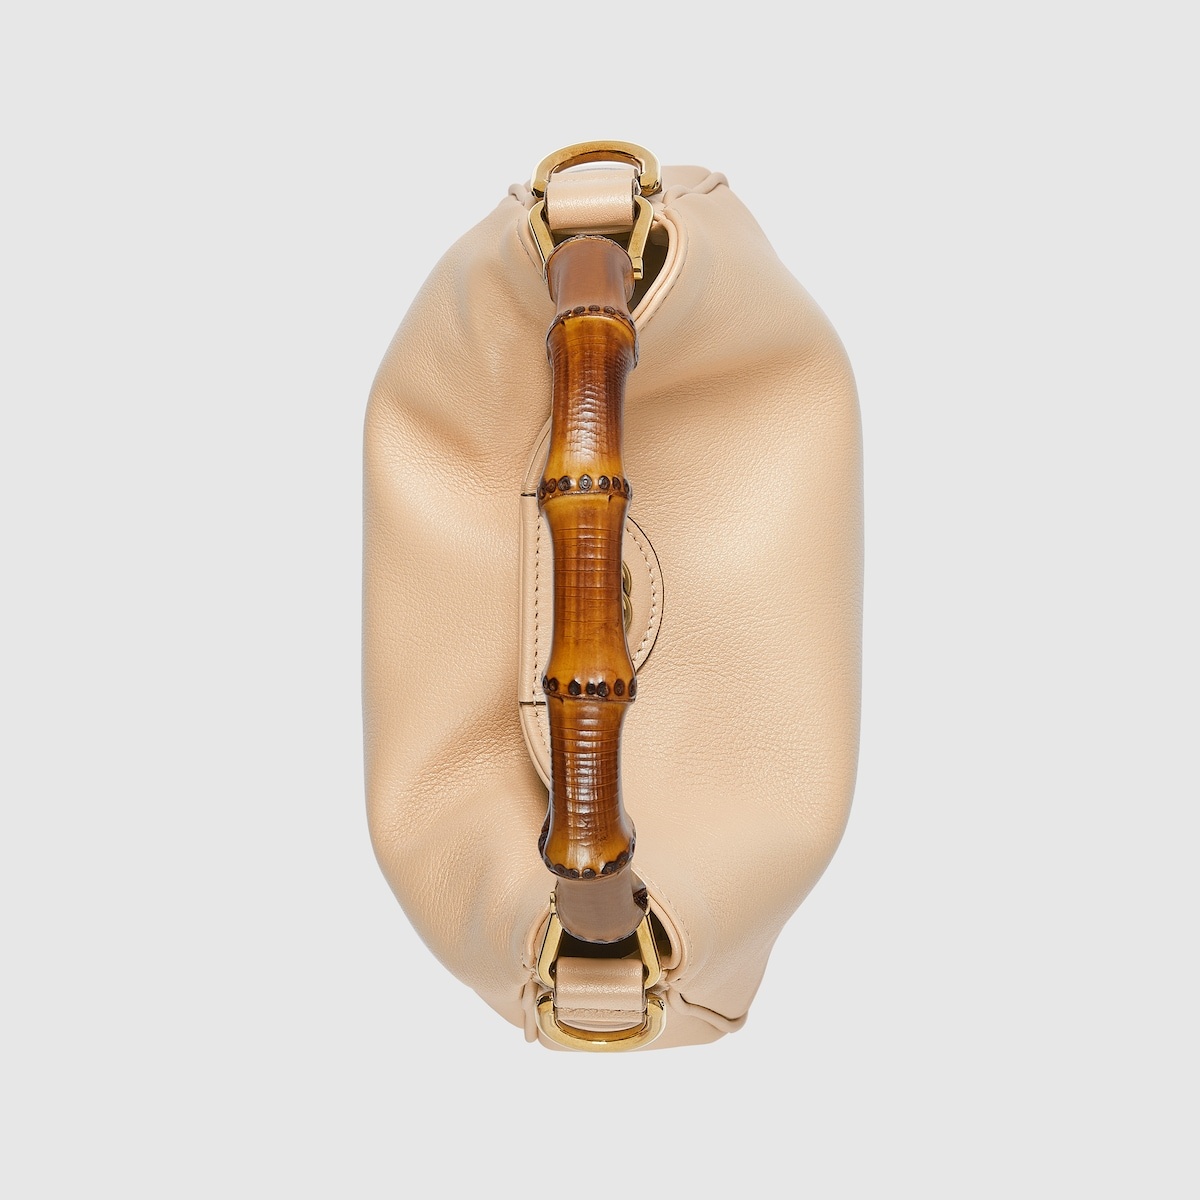 Gucci Diana small shoulder bag - 9